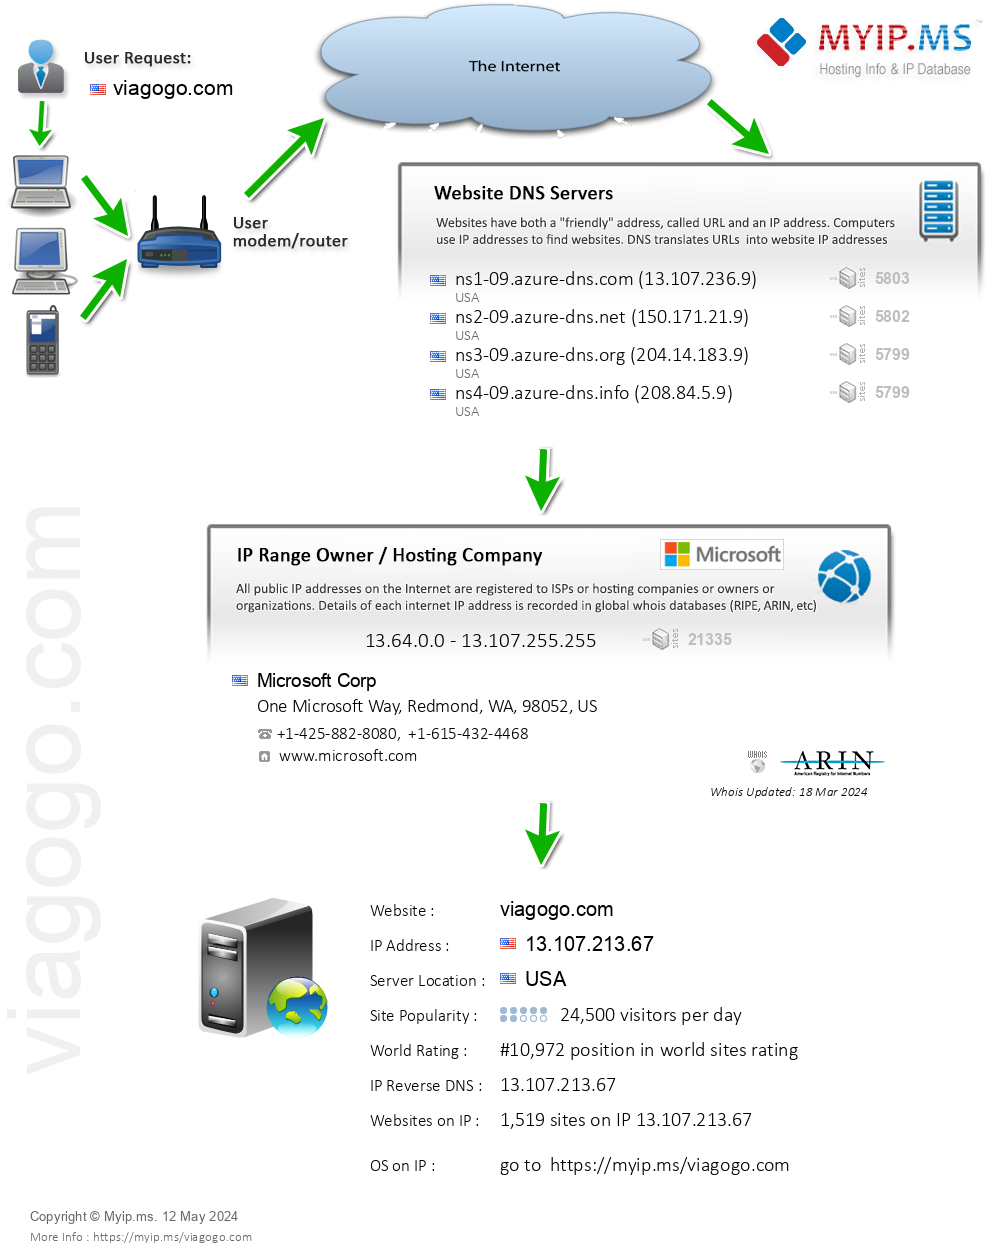 Viagogo.com - Website Hosting Visual IP Diagram